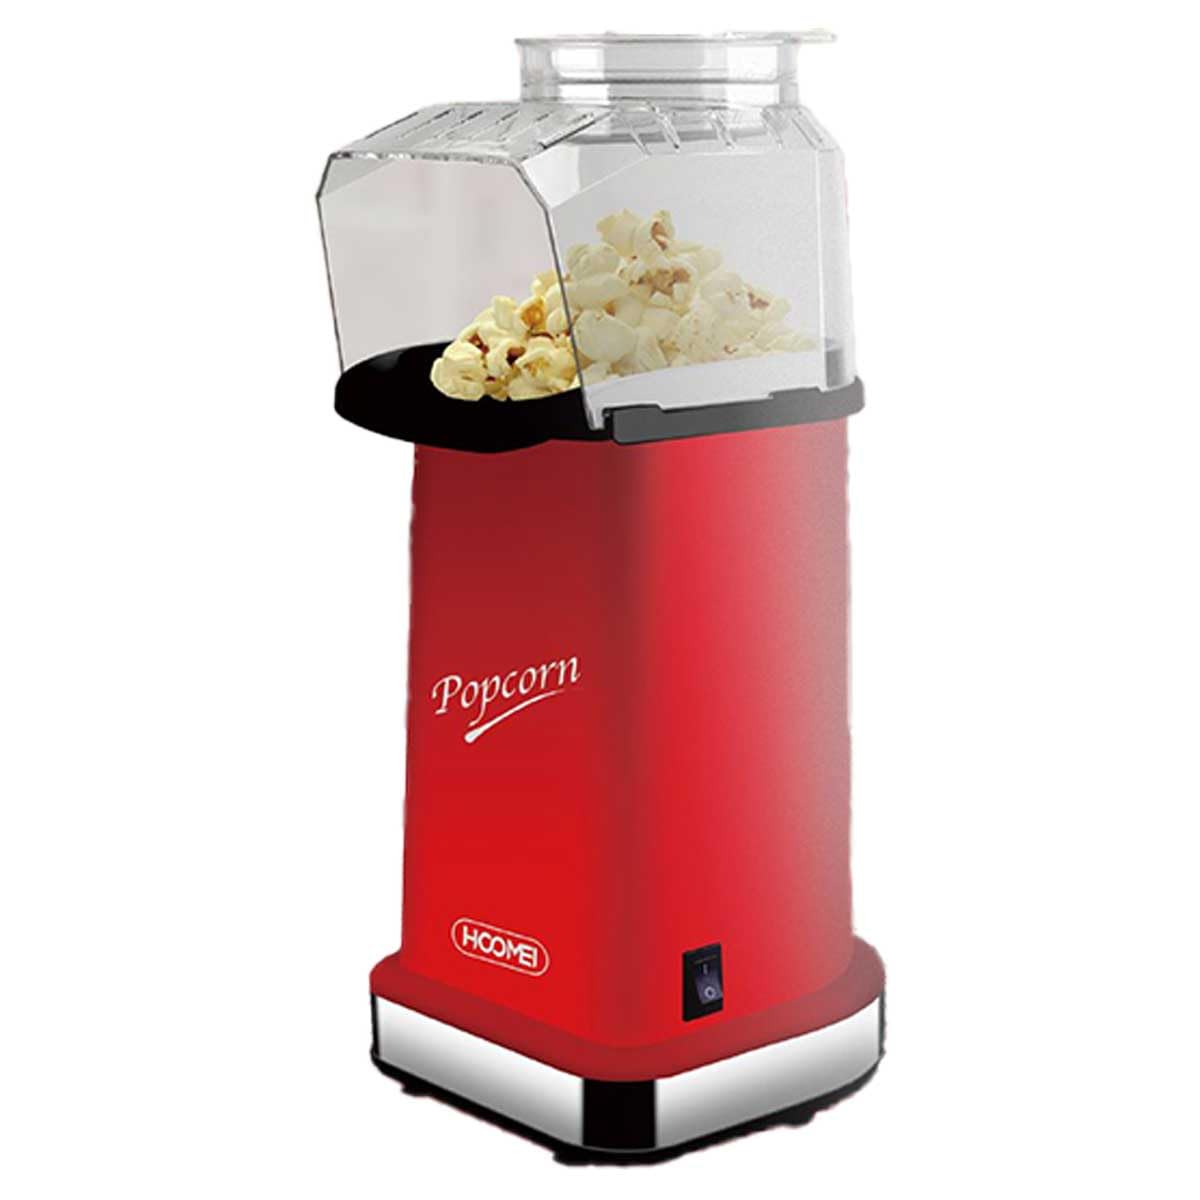 A2ZWORLD Heißluft-Popcorn-Maker, 1200 W, schnelle Zubereitung, max. 3 Minuten, ohne Öl und Fett, leicht zu reinigen (5370)